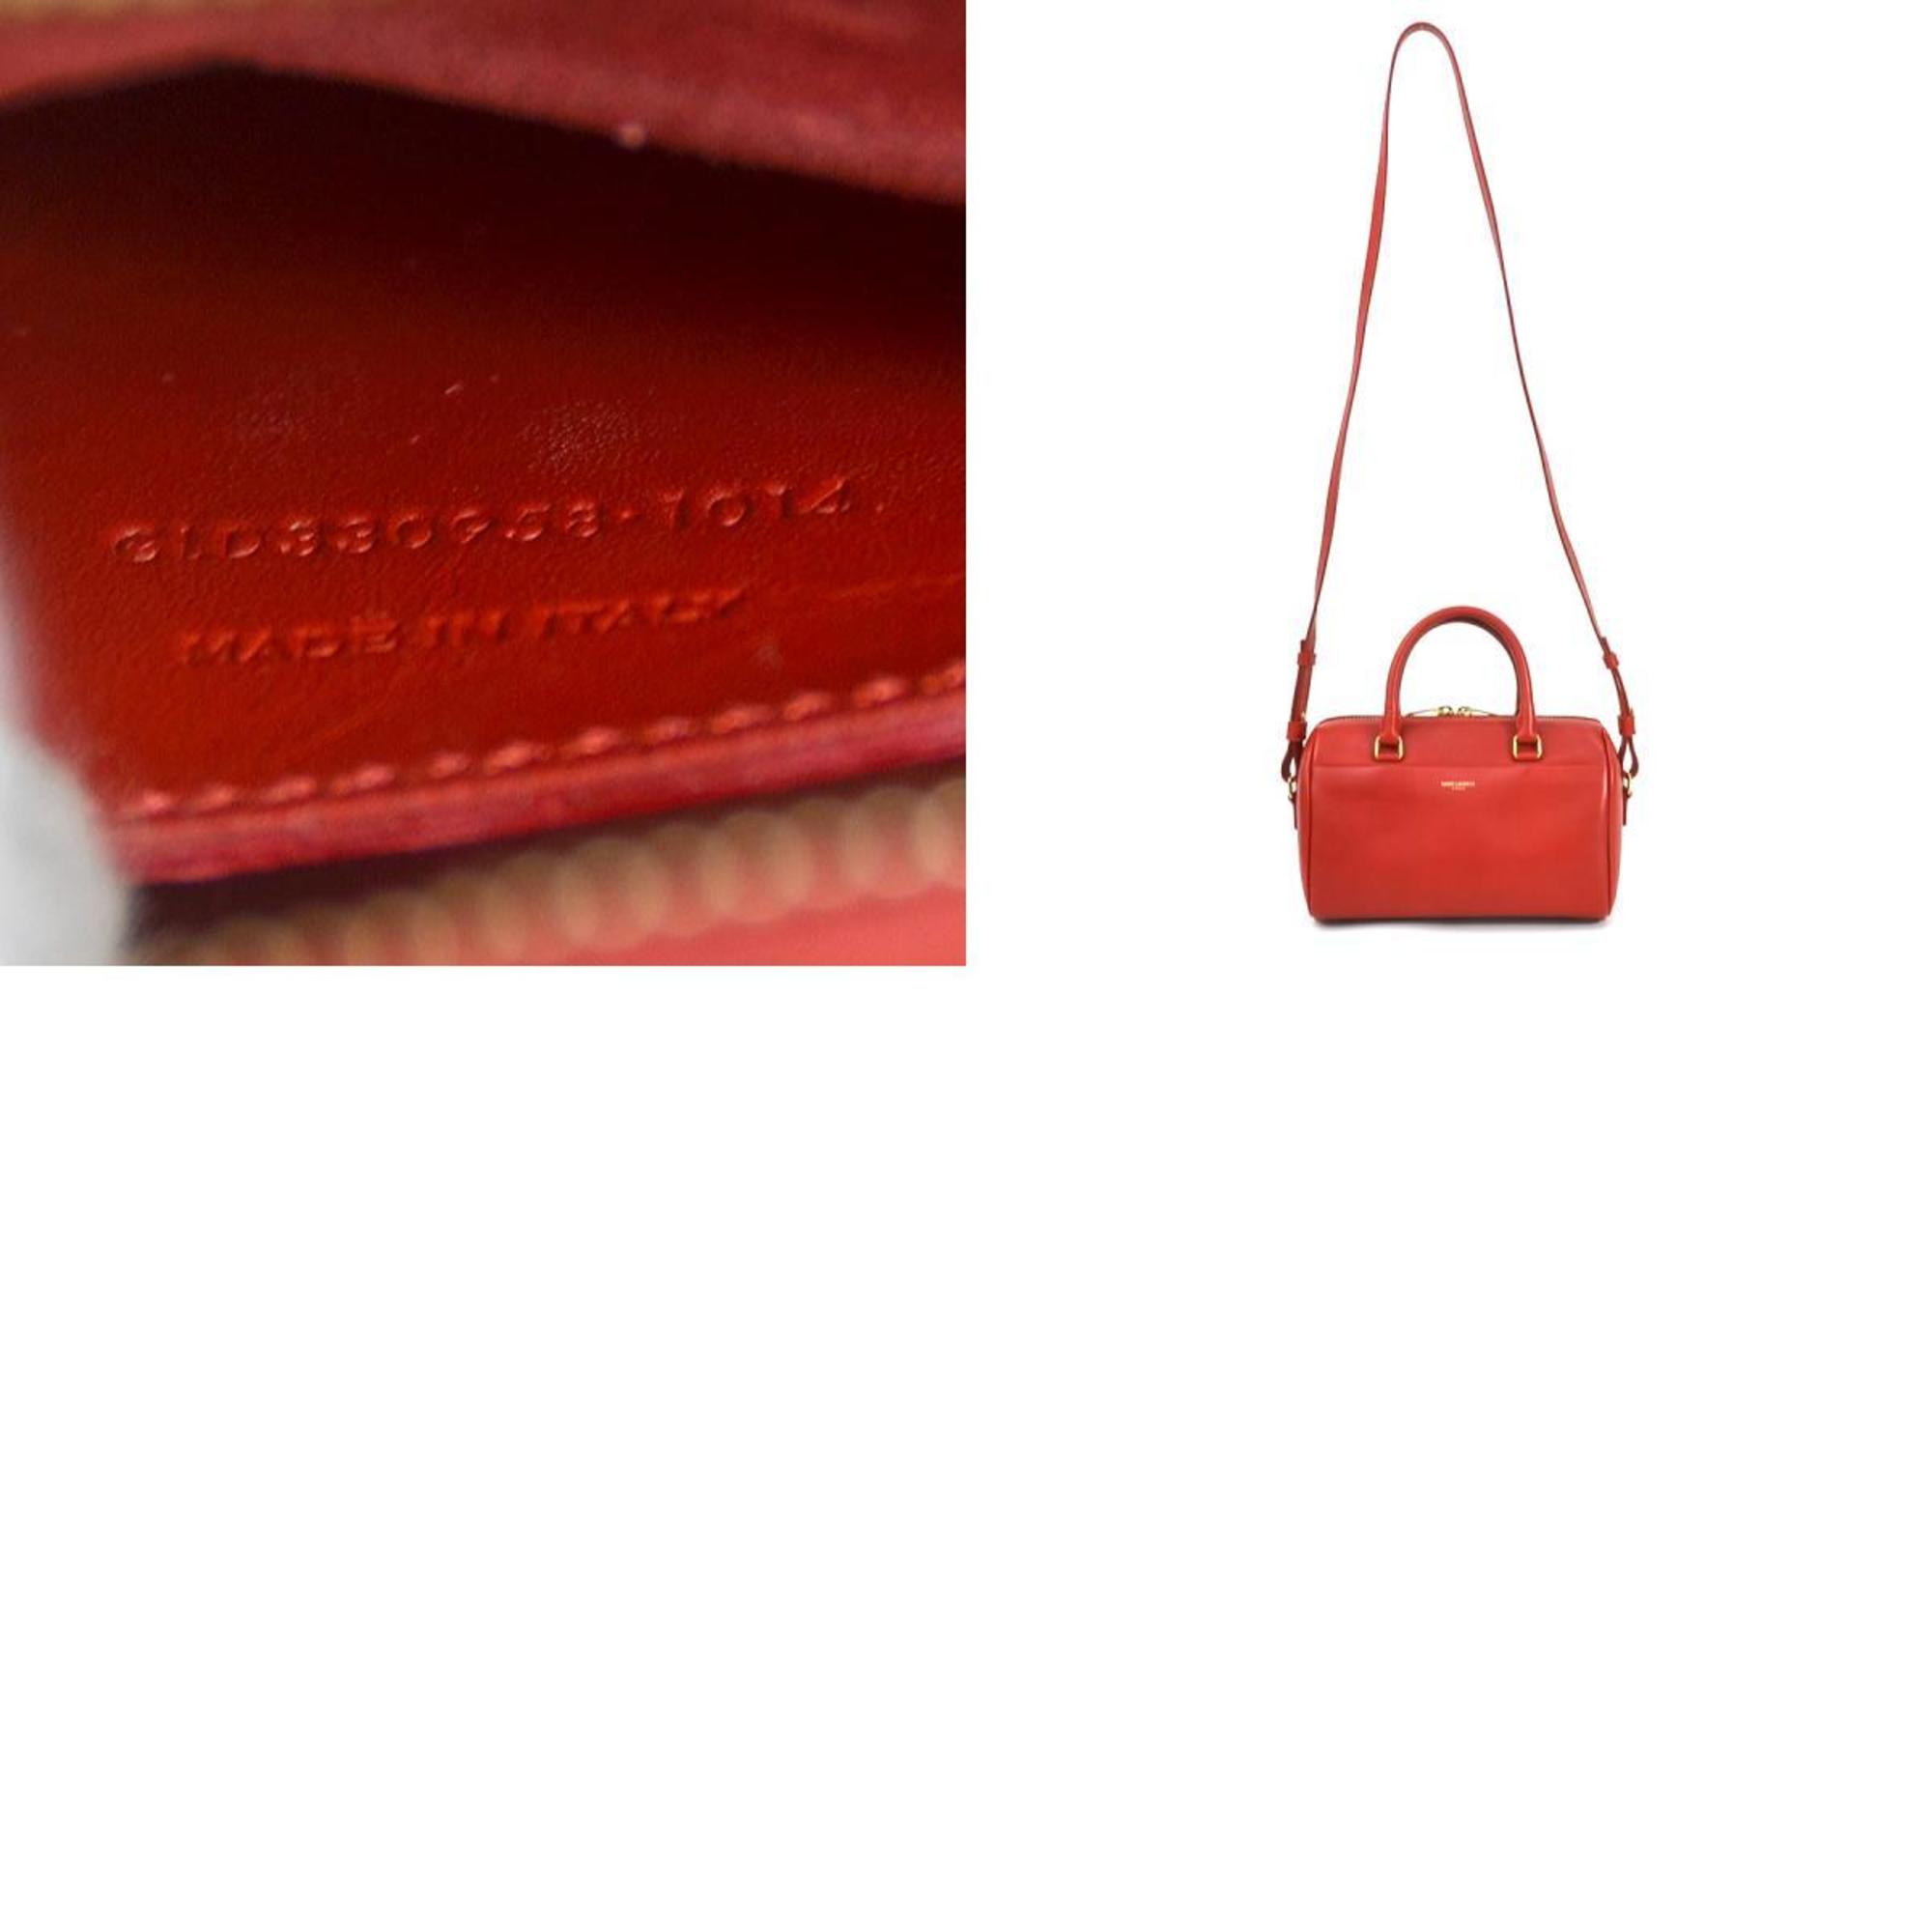 Saint Laurent SAINT LAURENT Handbag Shoulder Bag Baby Duffle Leather Red Gold Women's e55995f